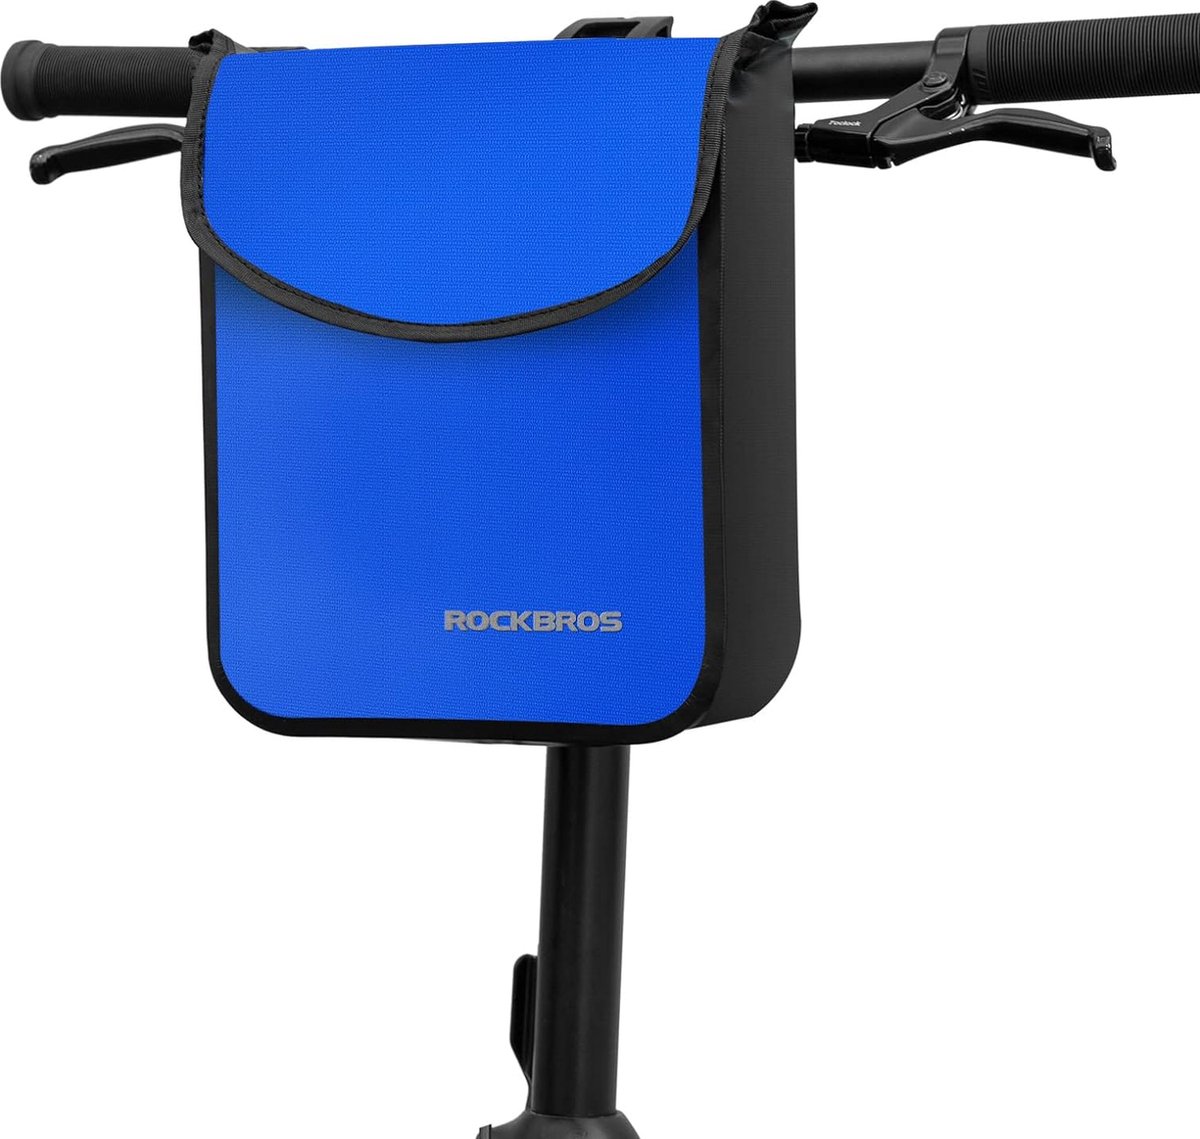 ROCKBROS Fietsstuurtas Waterdichte Fietstas 4.5L van PVC voor Mountainbikes, Racefietsen, E-scooters Blauw